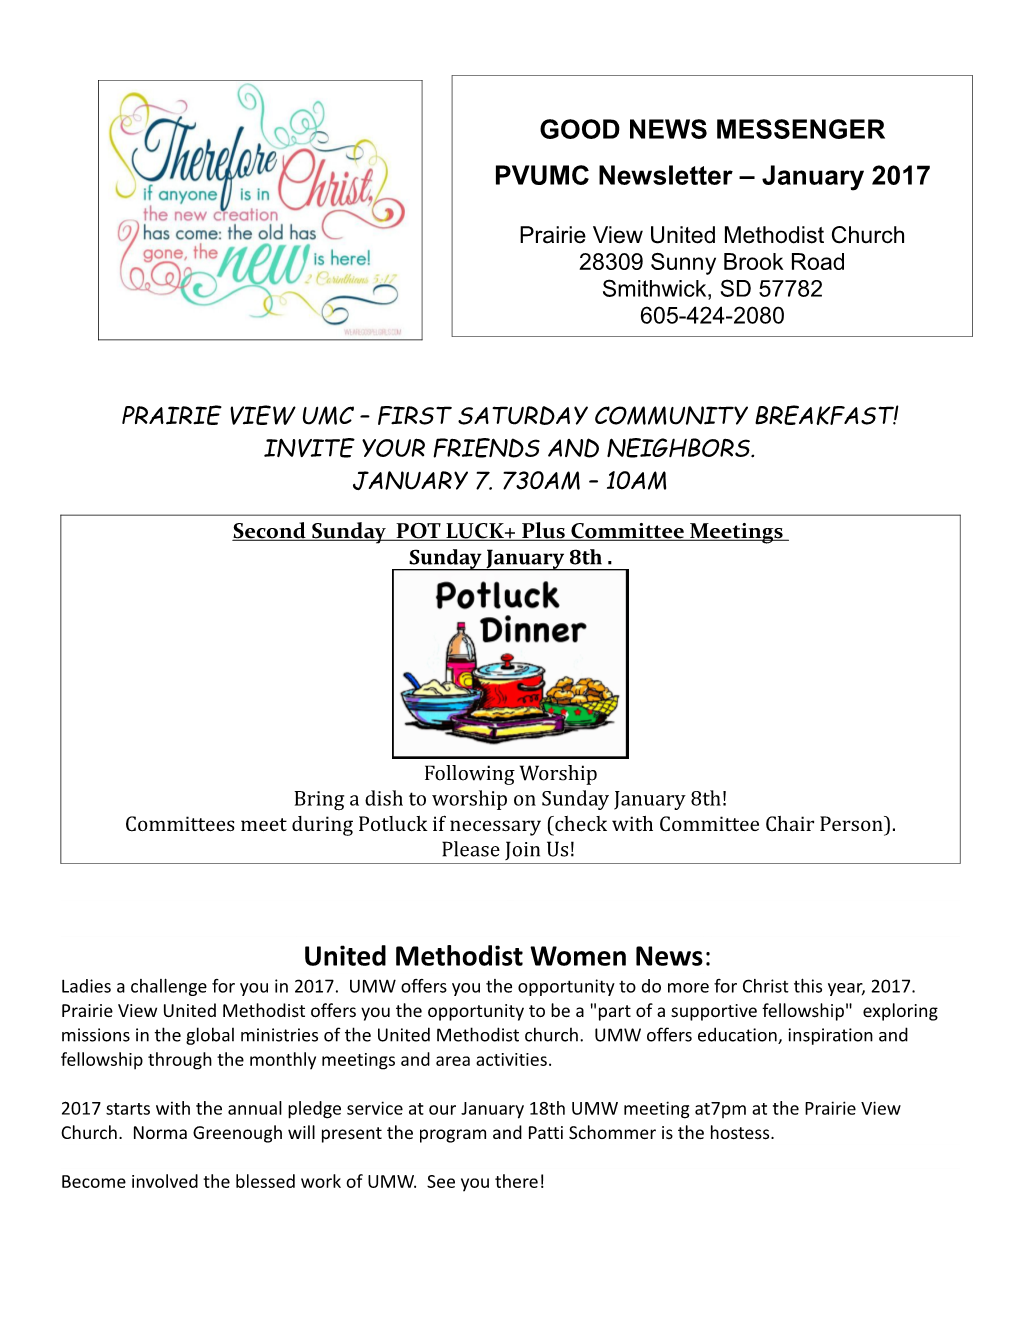 Prairie View Umc First Saturday Community Breakfast!